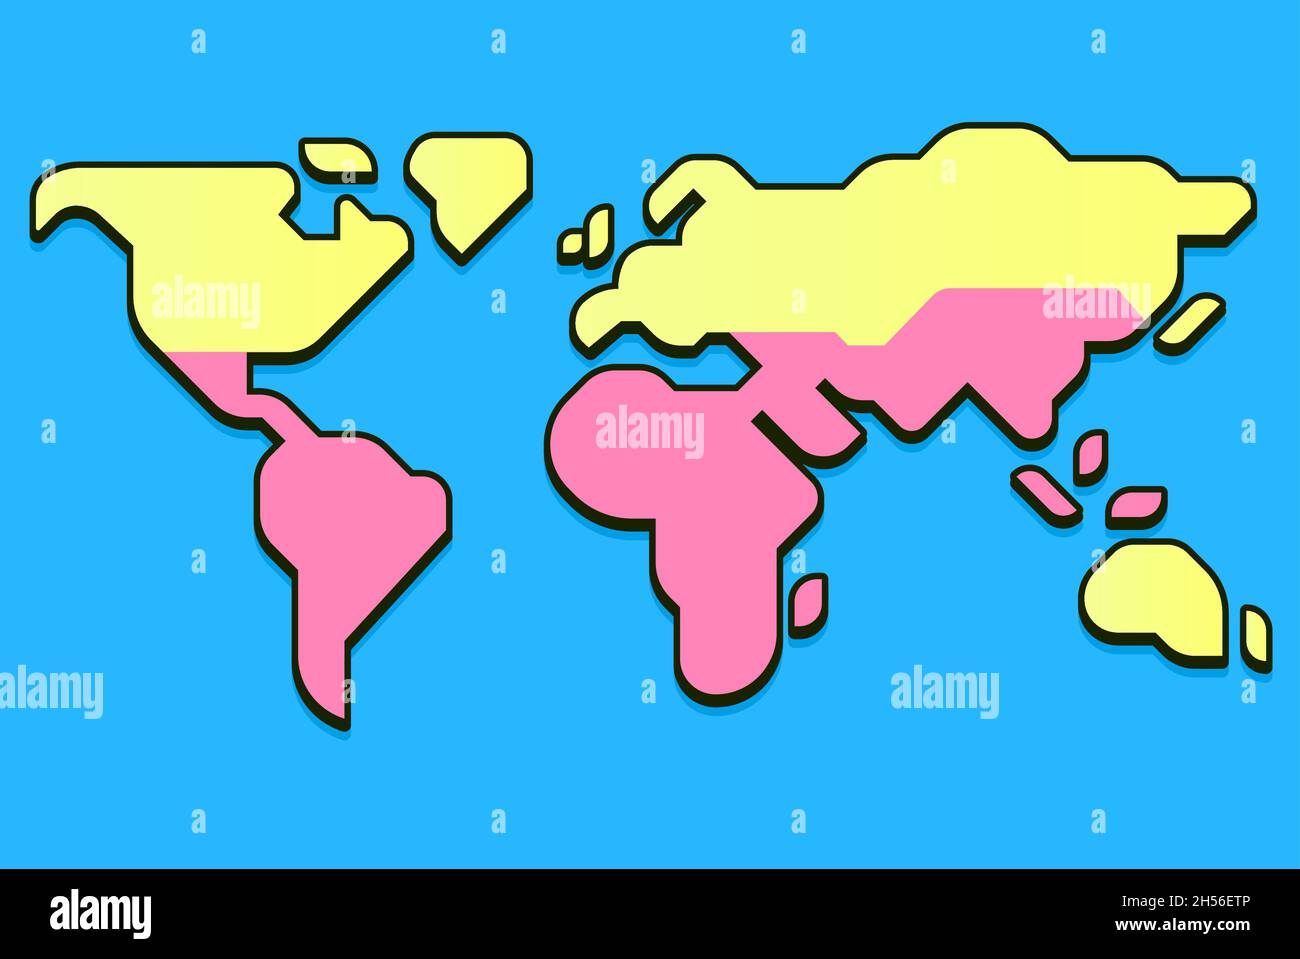 Mappa del mondo semplificata con Global North e Global South divide. Infografica vettoriale piatta moderna, illustrazione di clip art. Illustrazione Vettoriale